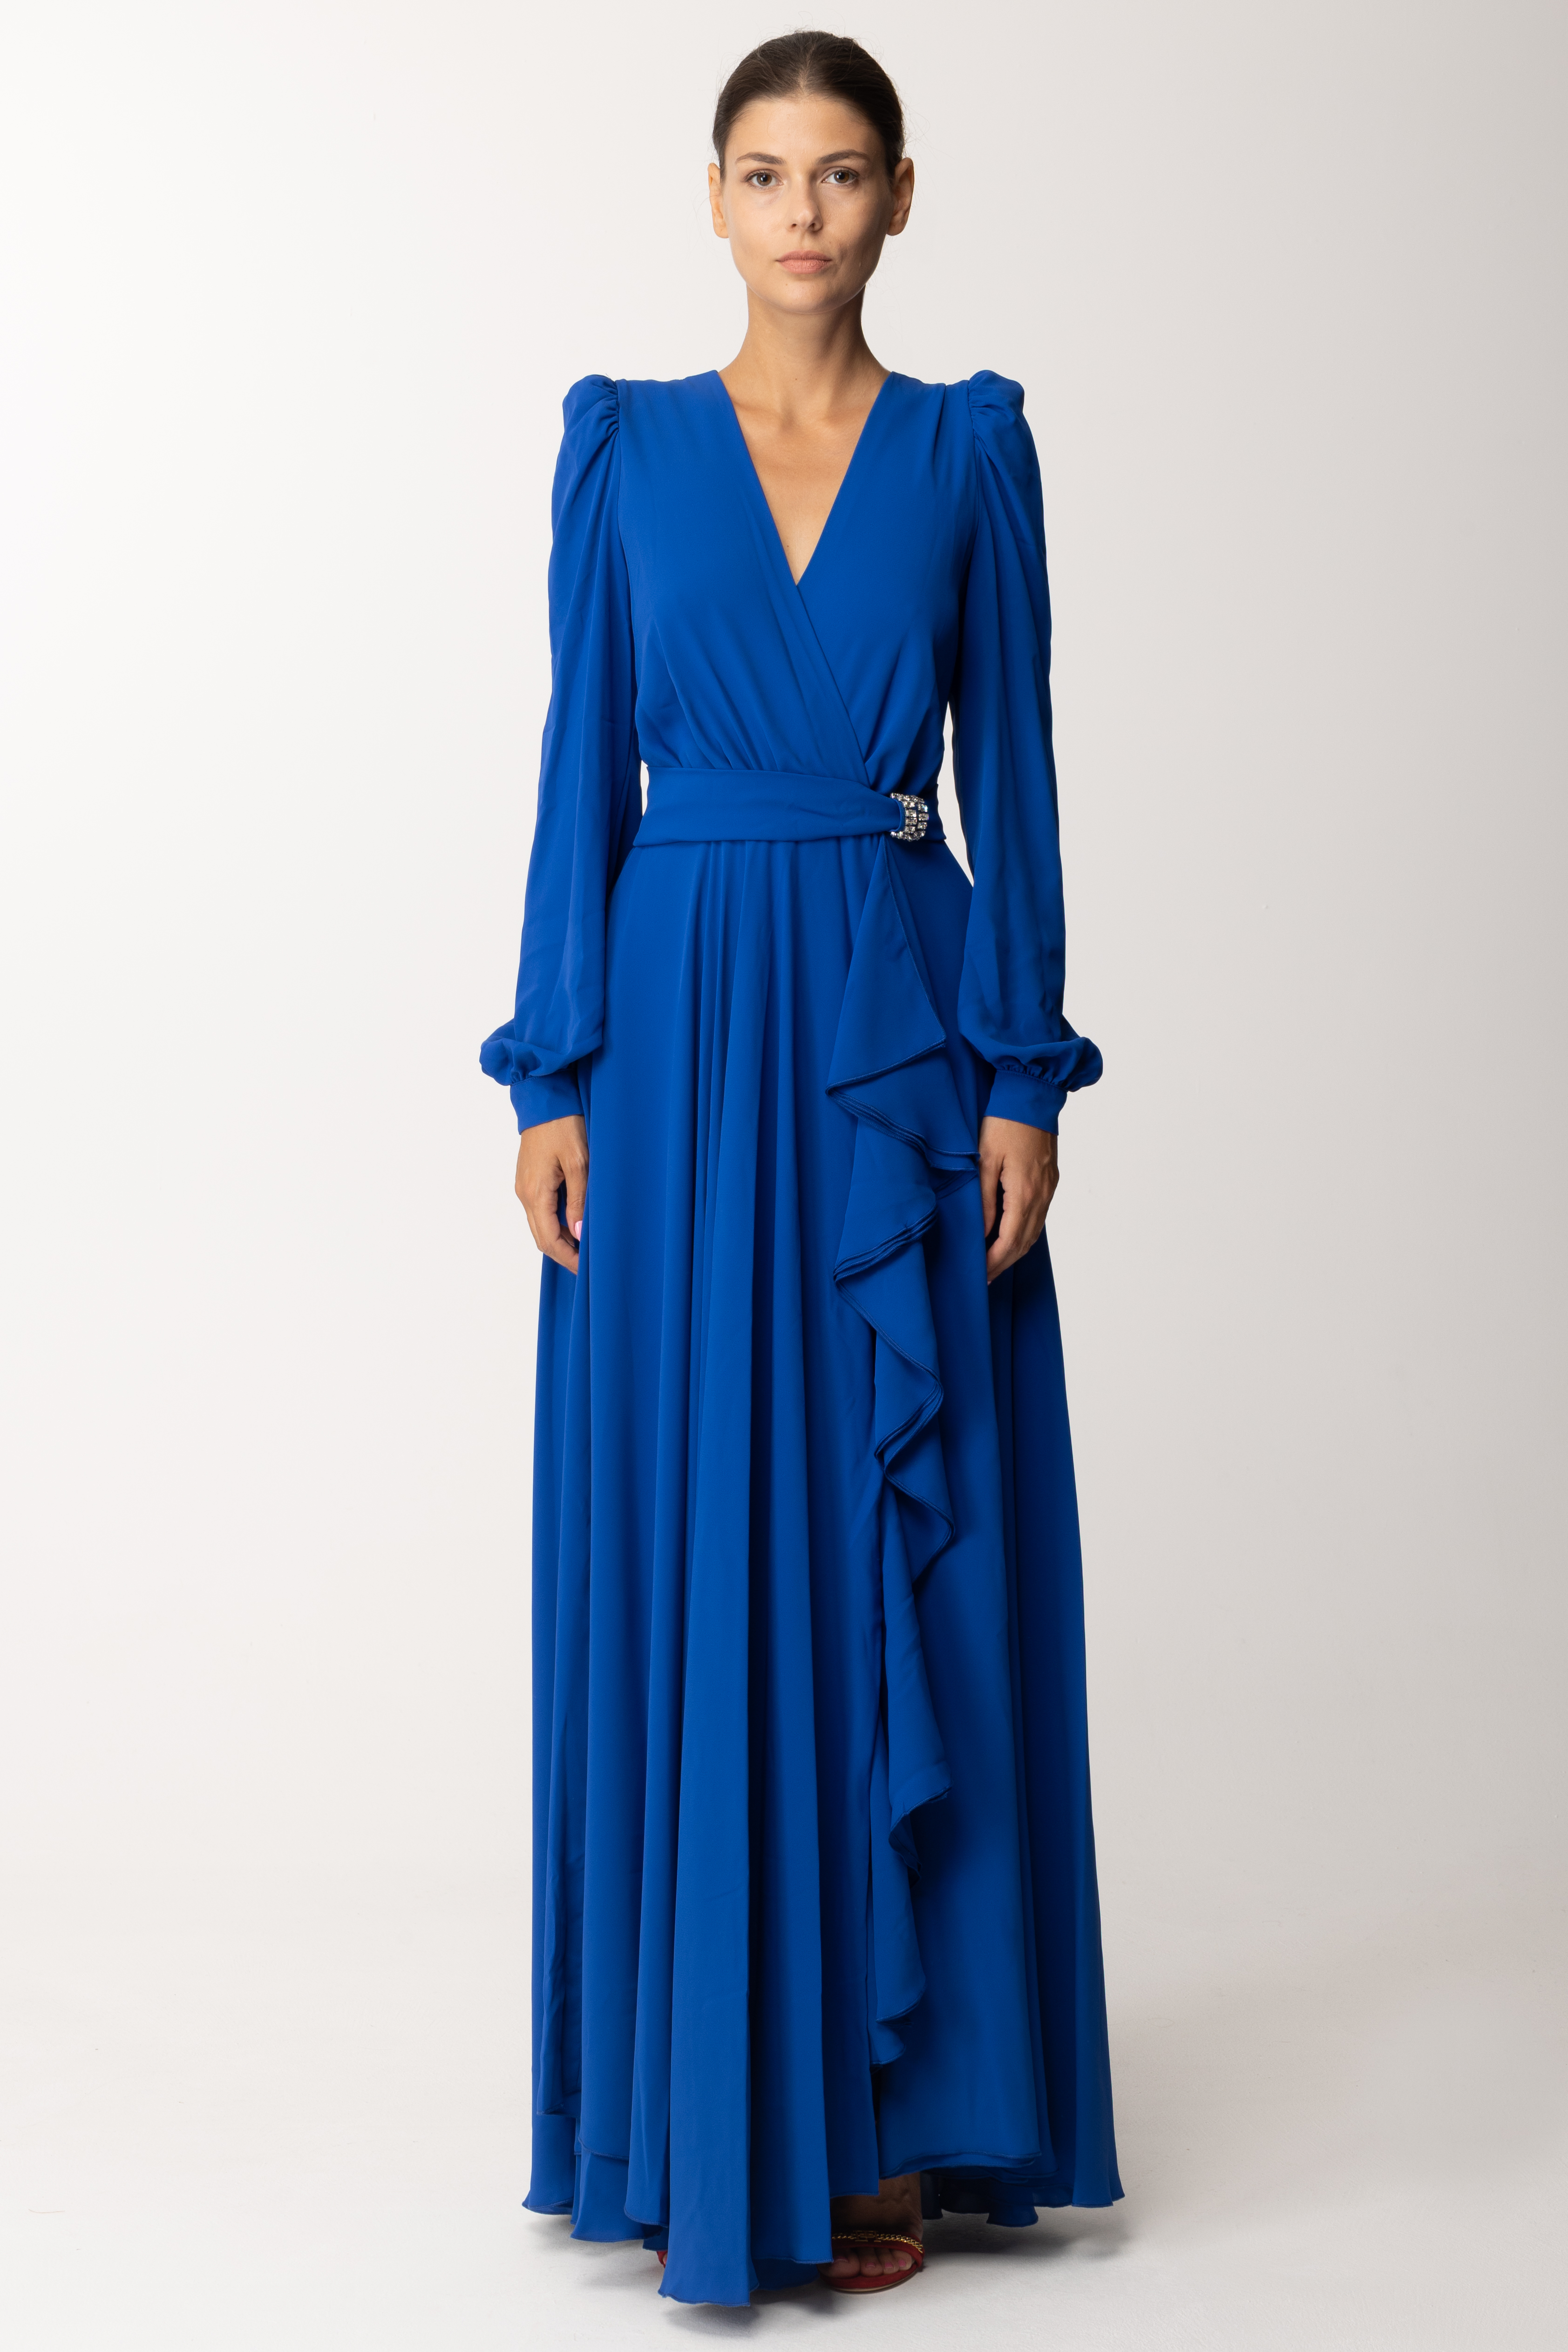 Vorschau: Dramèe Langes Kleid mit Rüschen und Gürtel Blu